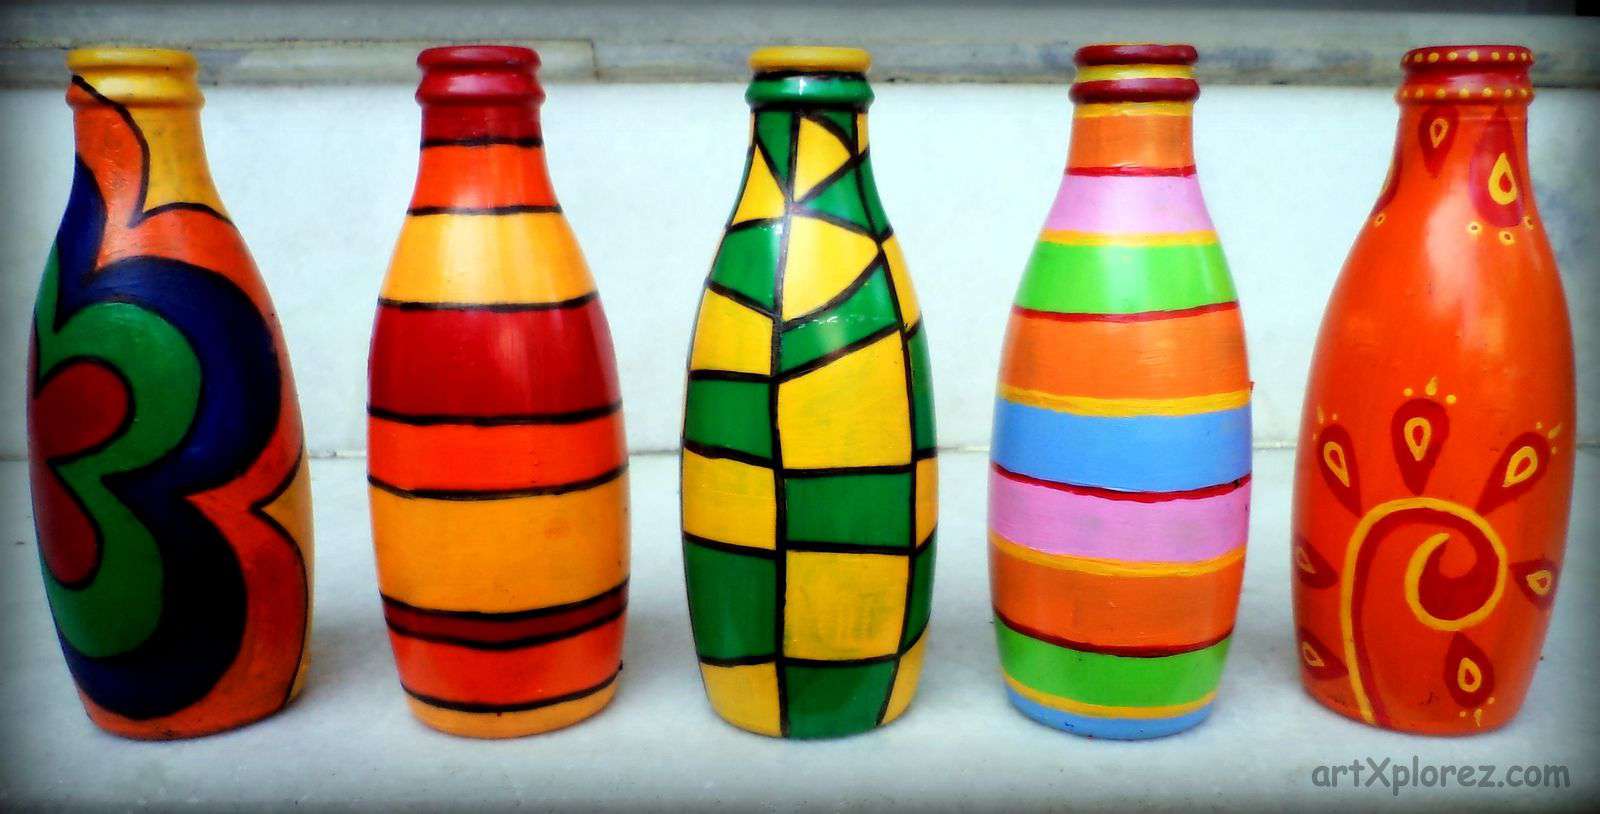 Decorative-bottle-art-designs